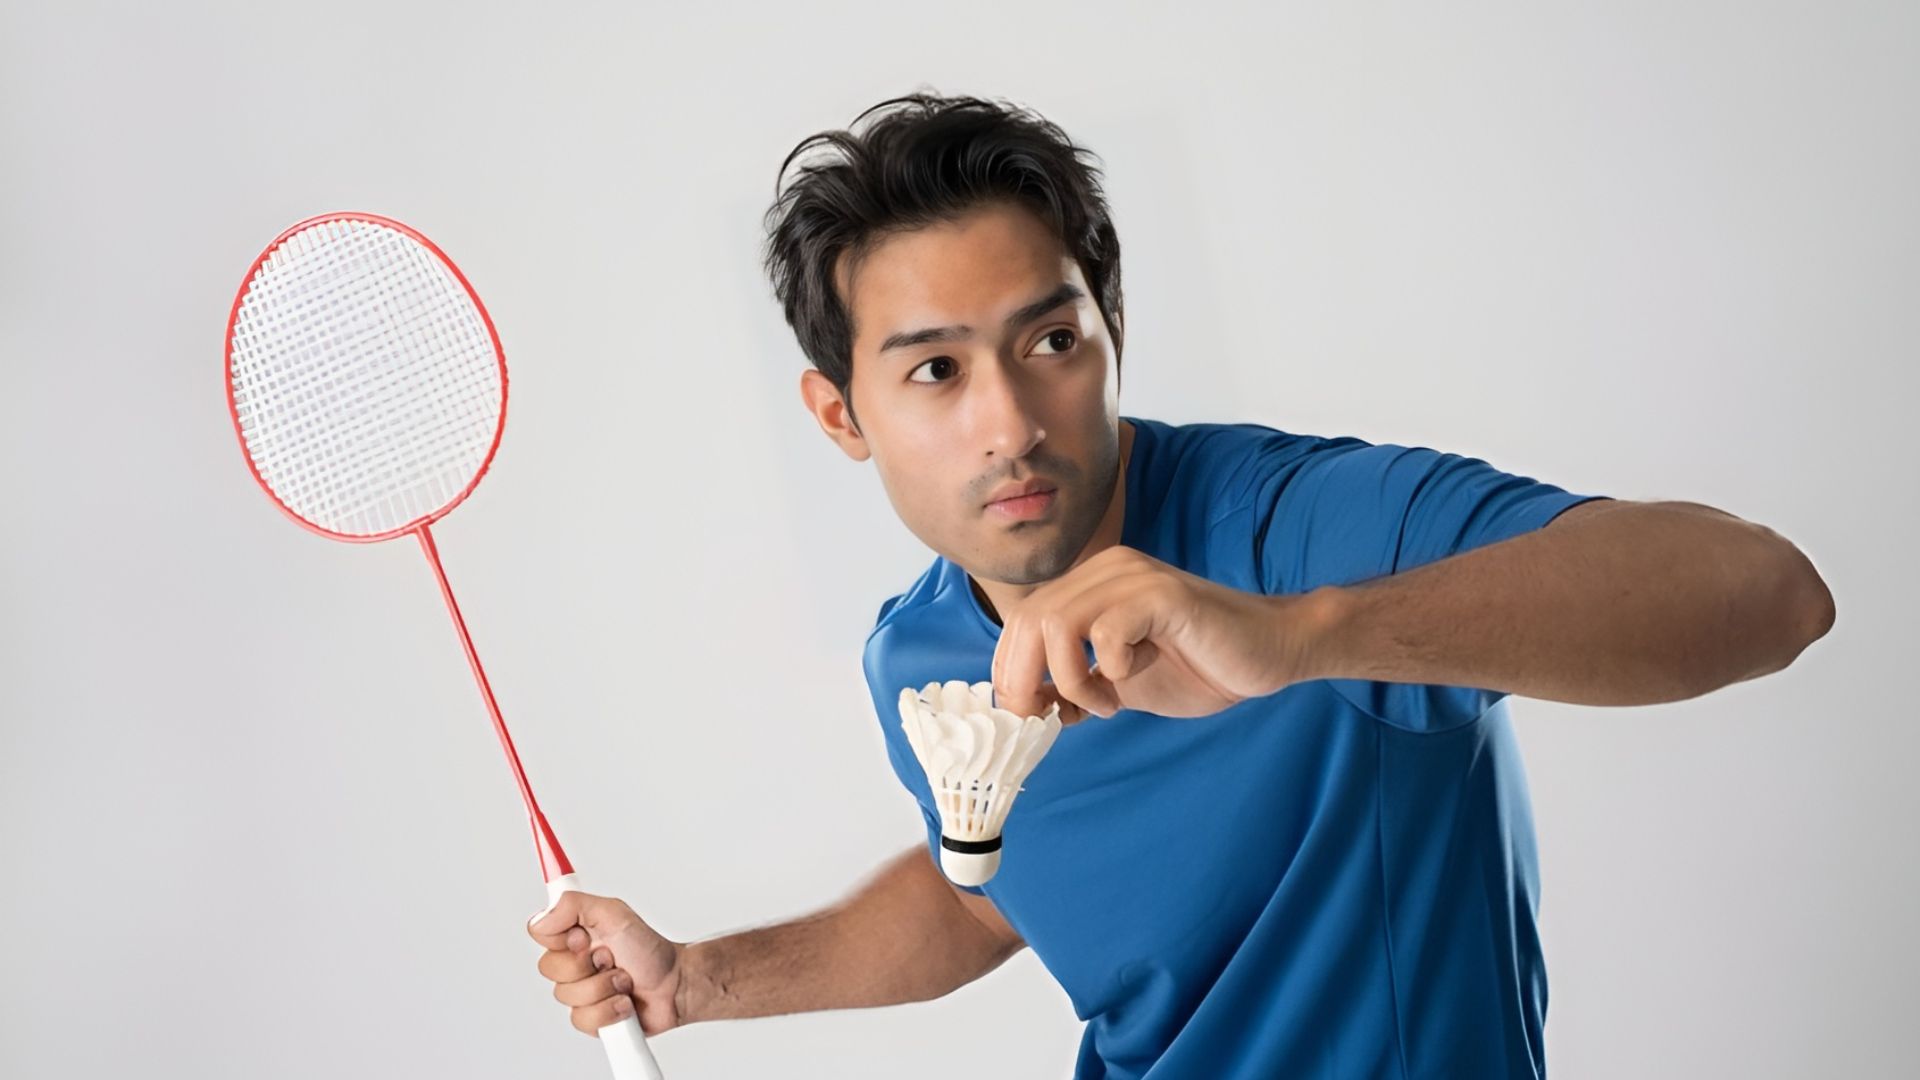 [Hướng dẫn] 6 cách cầm vợt cầu lông đúng kỹ thuật